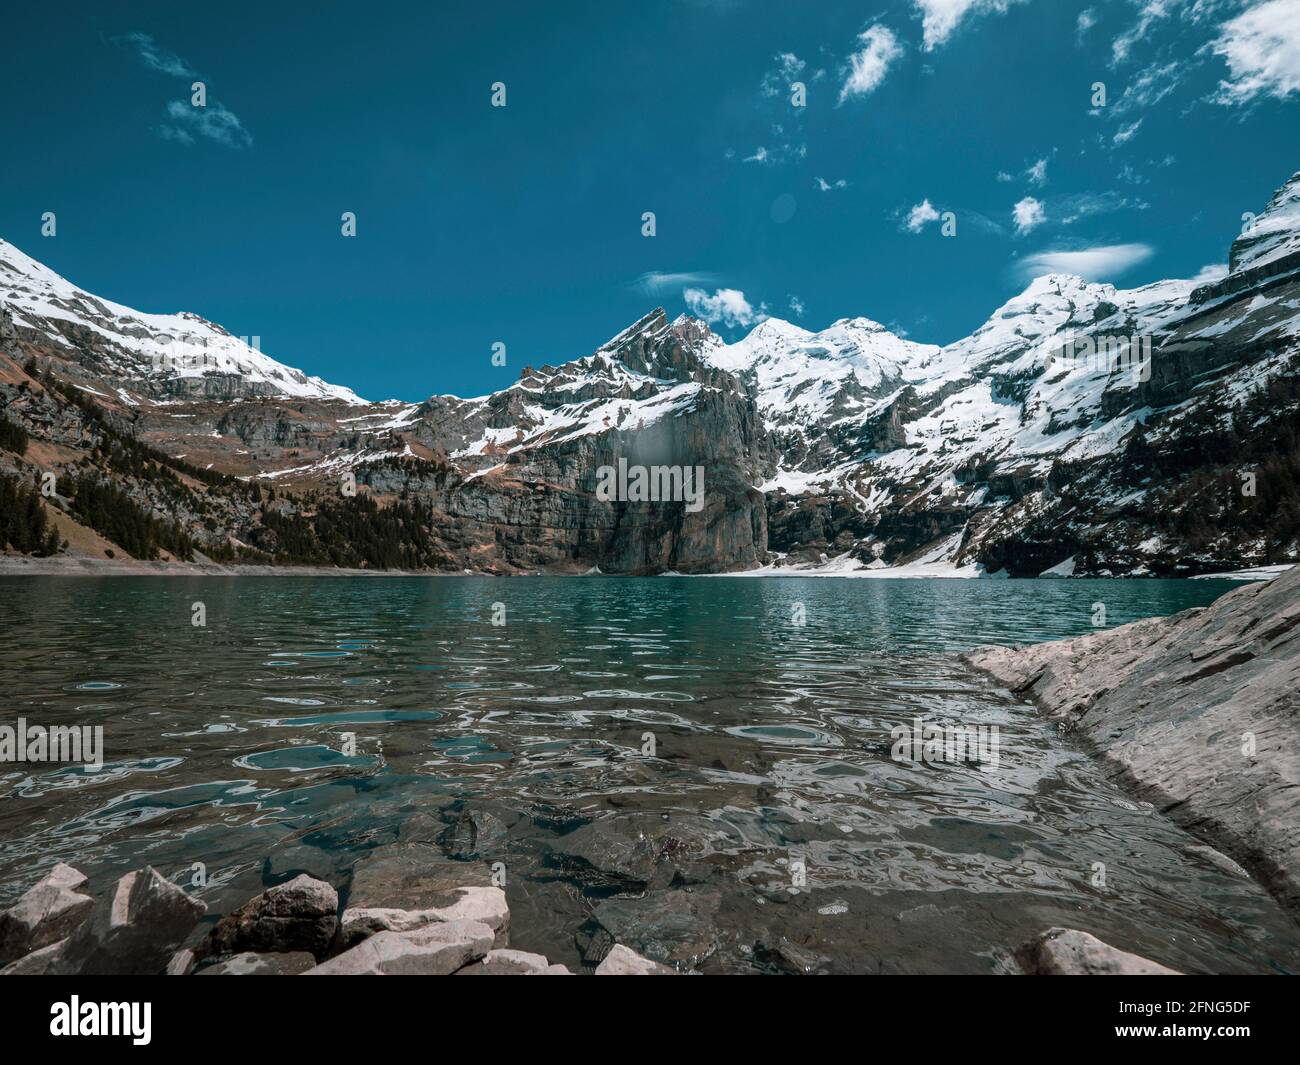 Alto lago alpino de Oeschinensee en Kandersteg, Suiza. El pintoresco lago azul claro está rodeado de altas montañas cubiertas de nieve, glaciares y Foto de stock